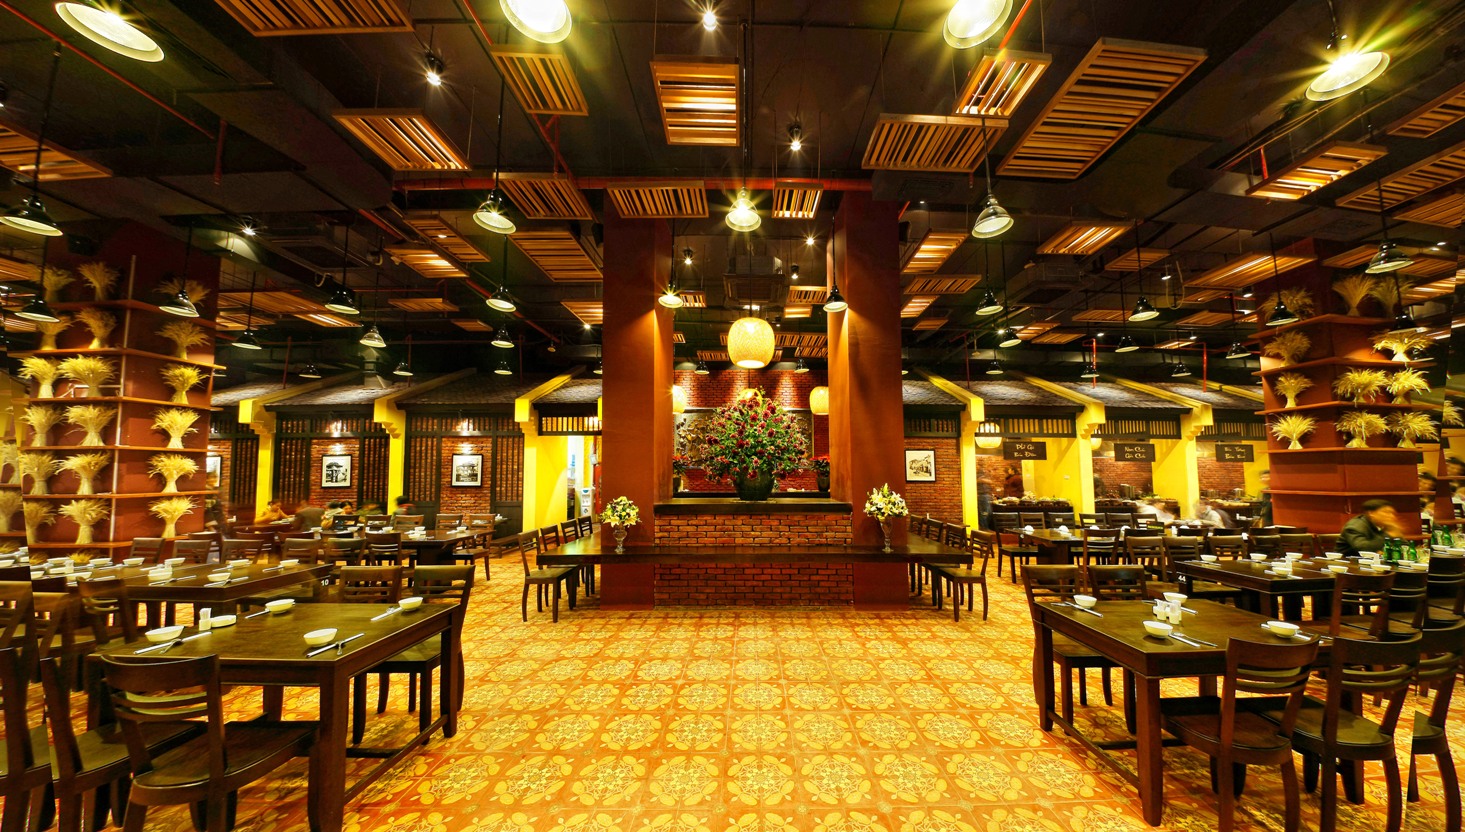 Top 5 Restaurants in Hanoi - part 2